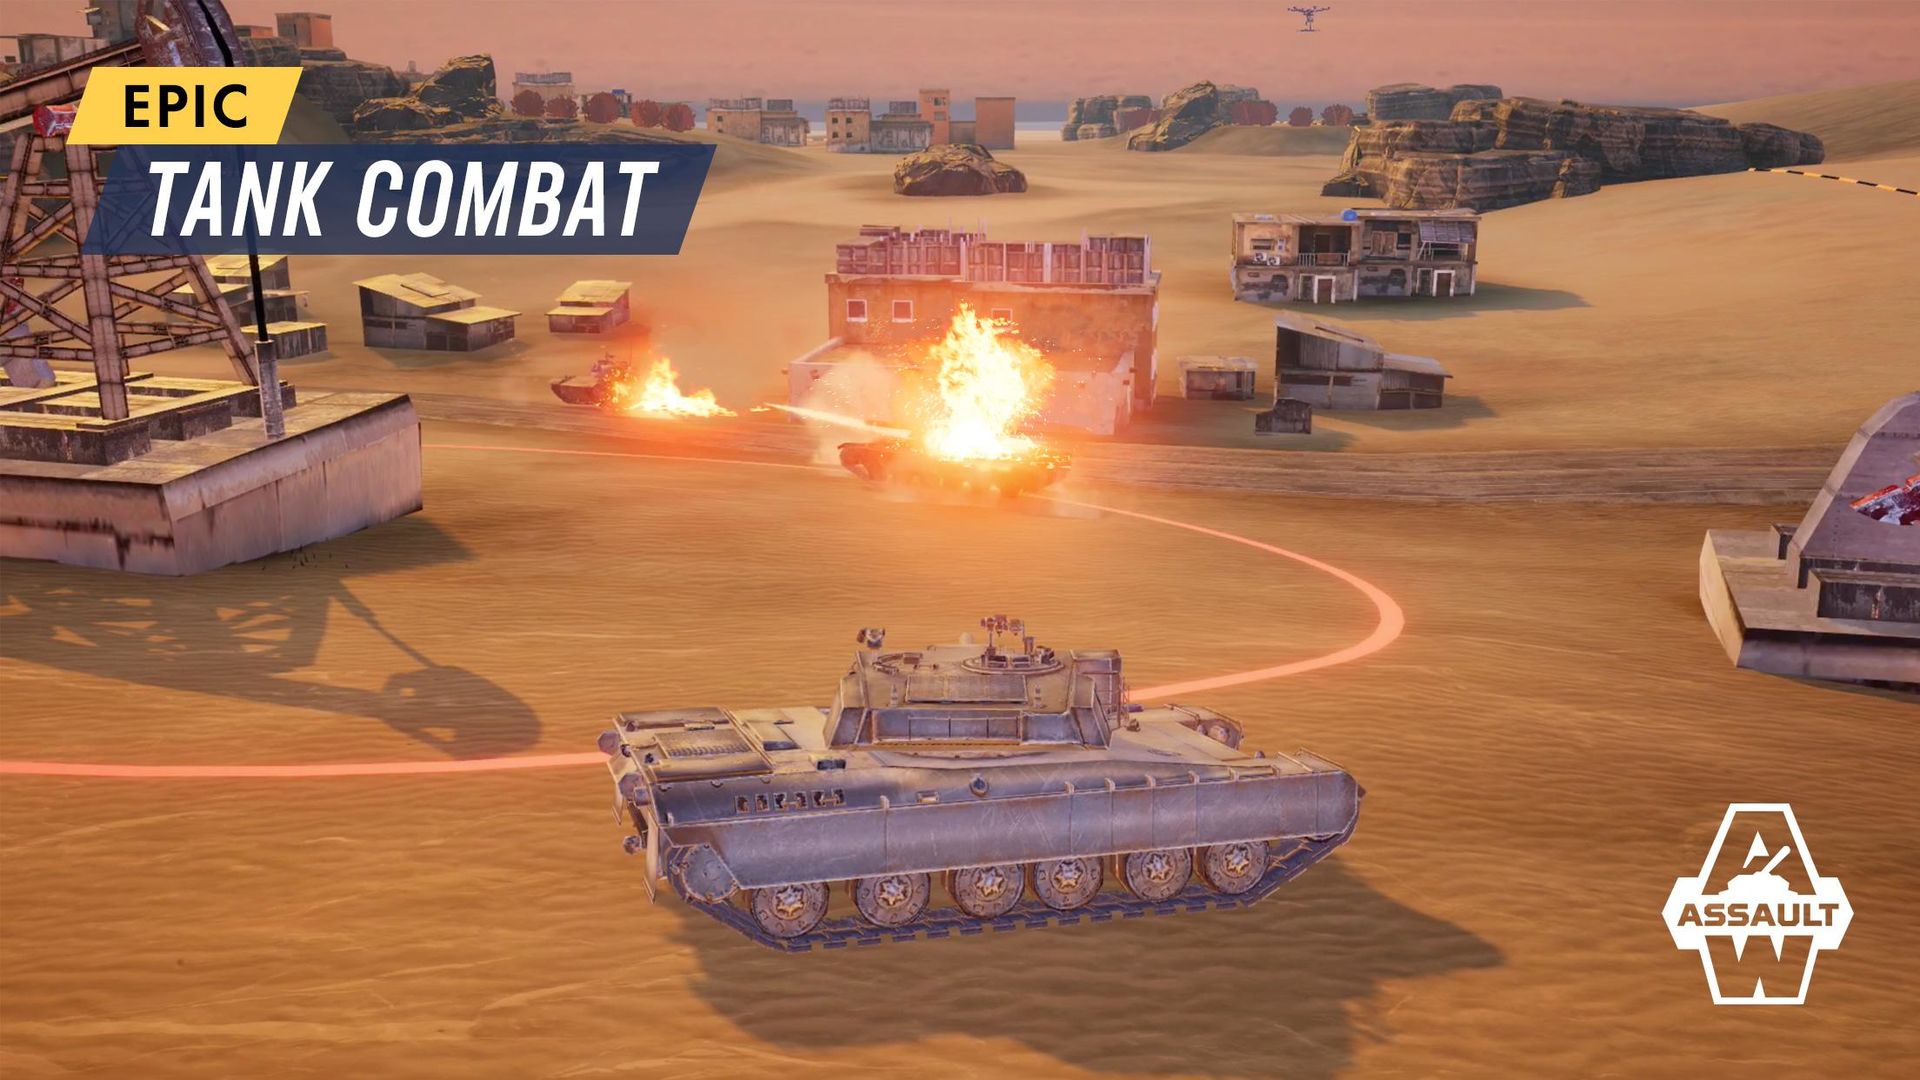 Screenshot of Armored Warfare: Assault